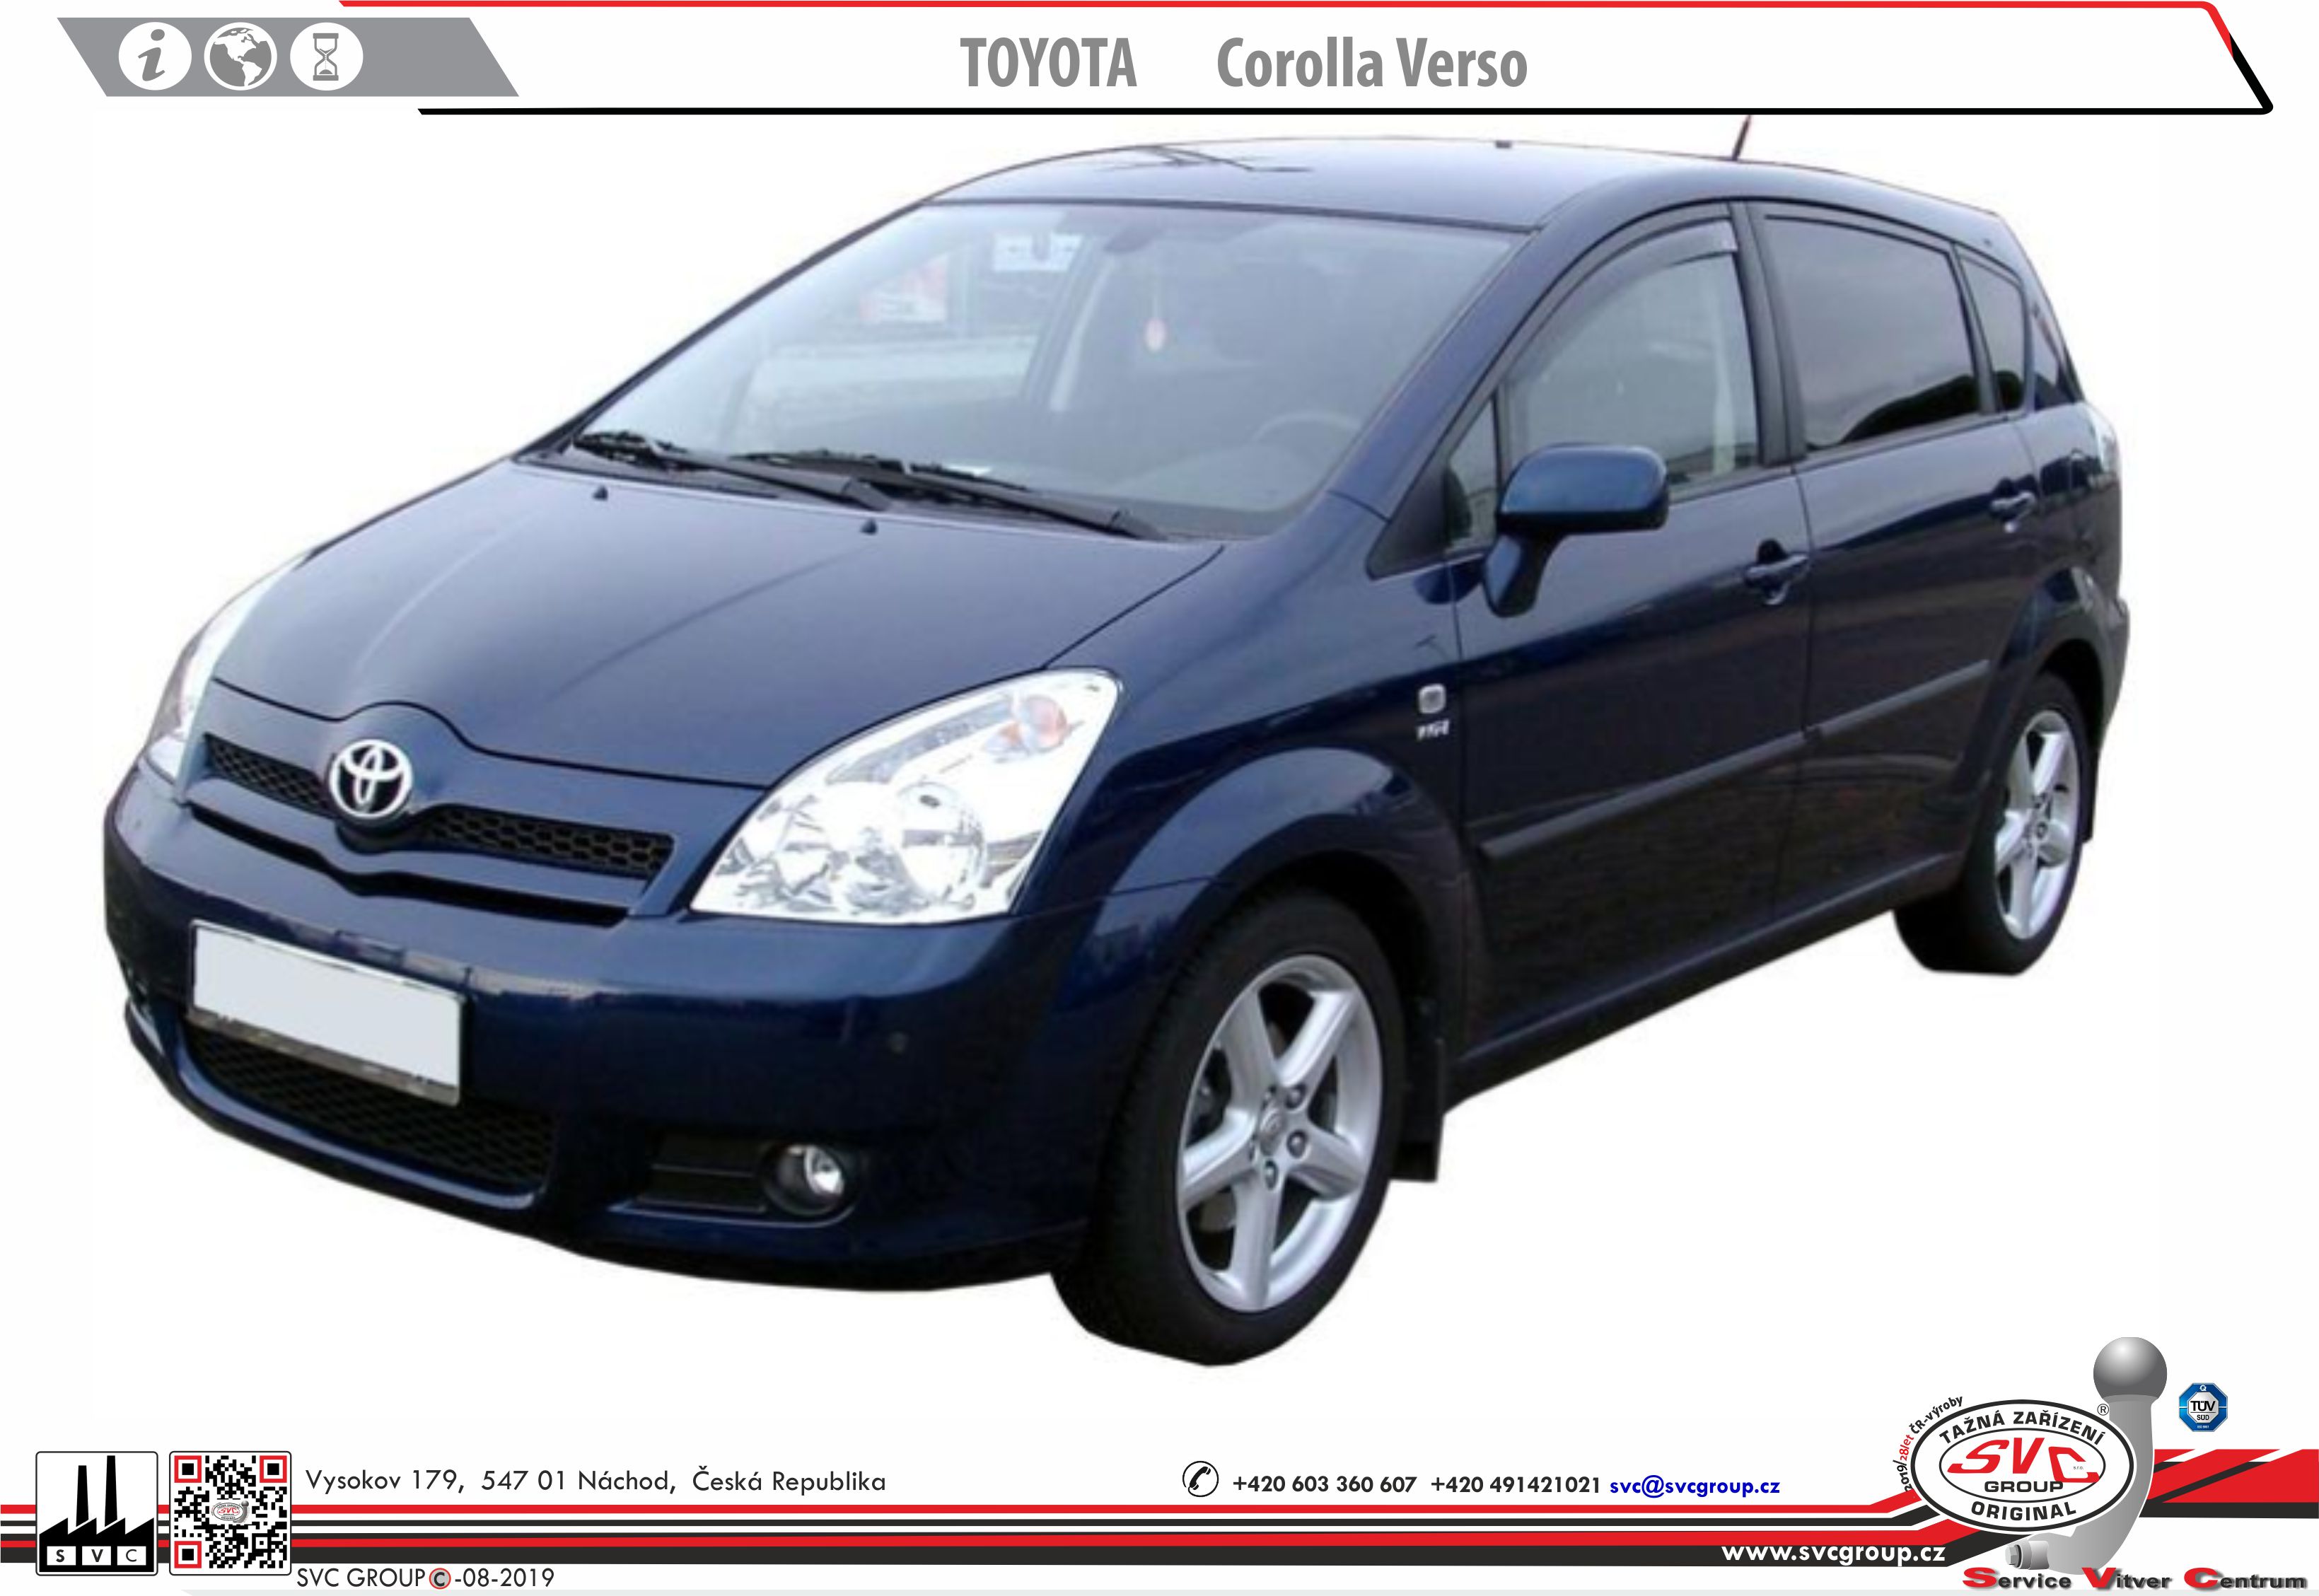 Toyota Corolla Verso 2001-2004